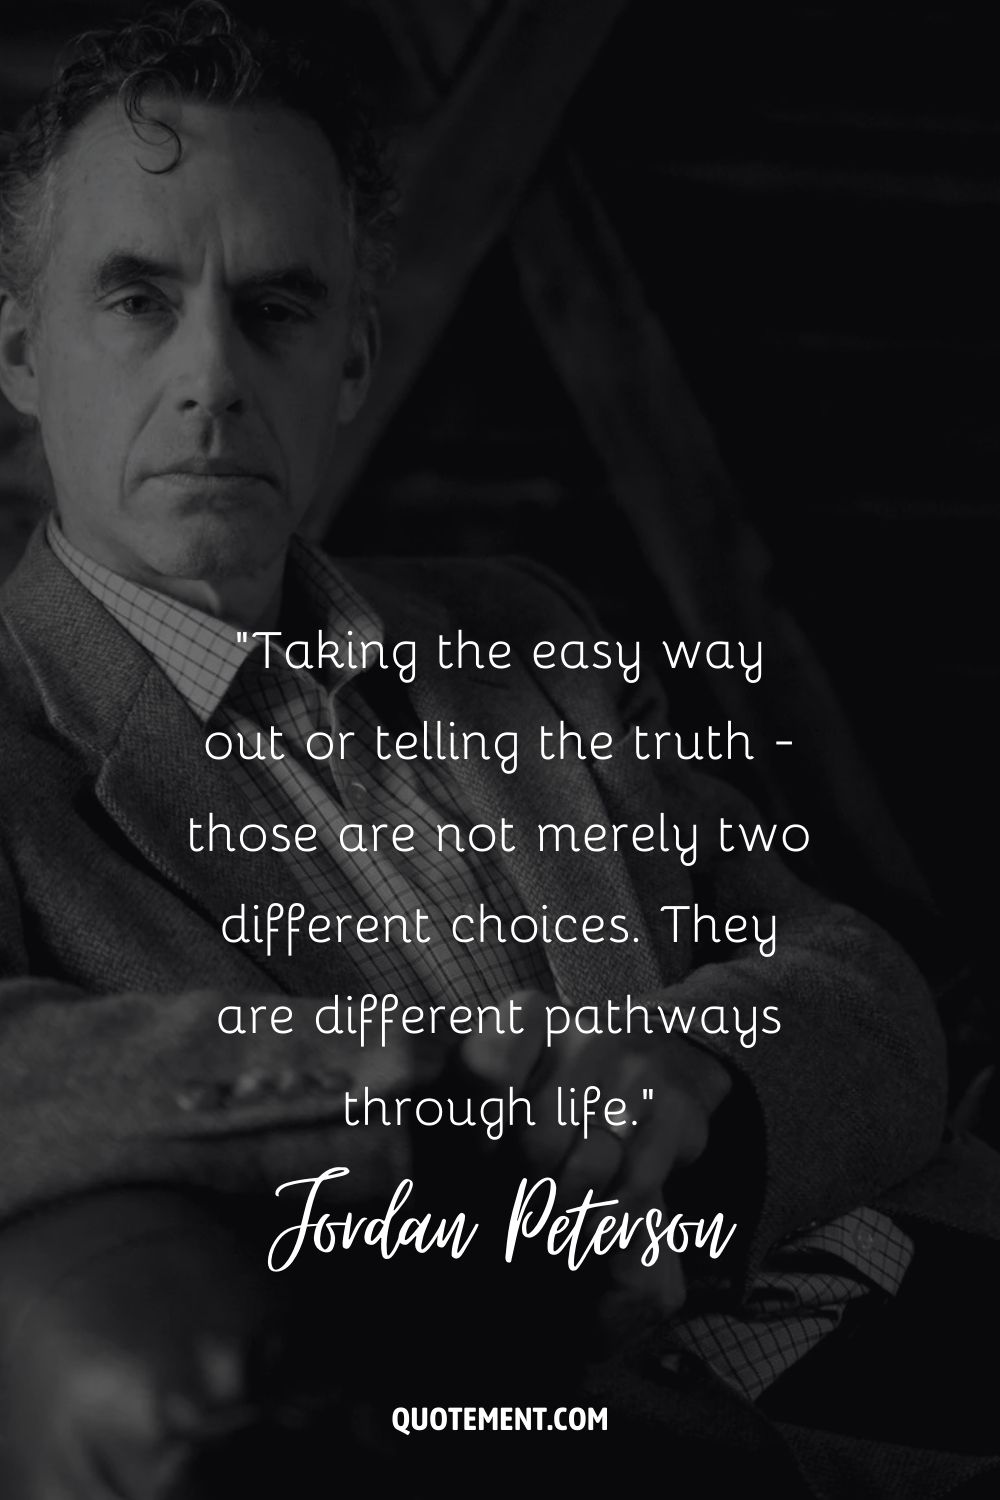 Tomar el camino más fácil o decir la verdad no son sólo dos opciones diferentes. Son caminos diferentes en la vida.